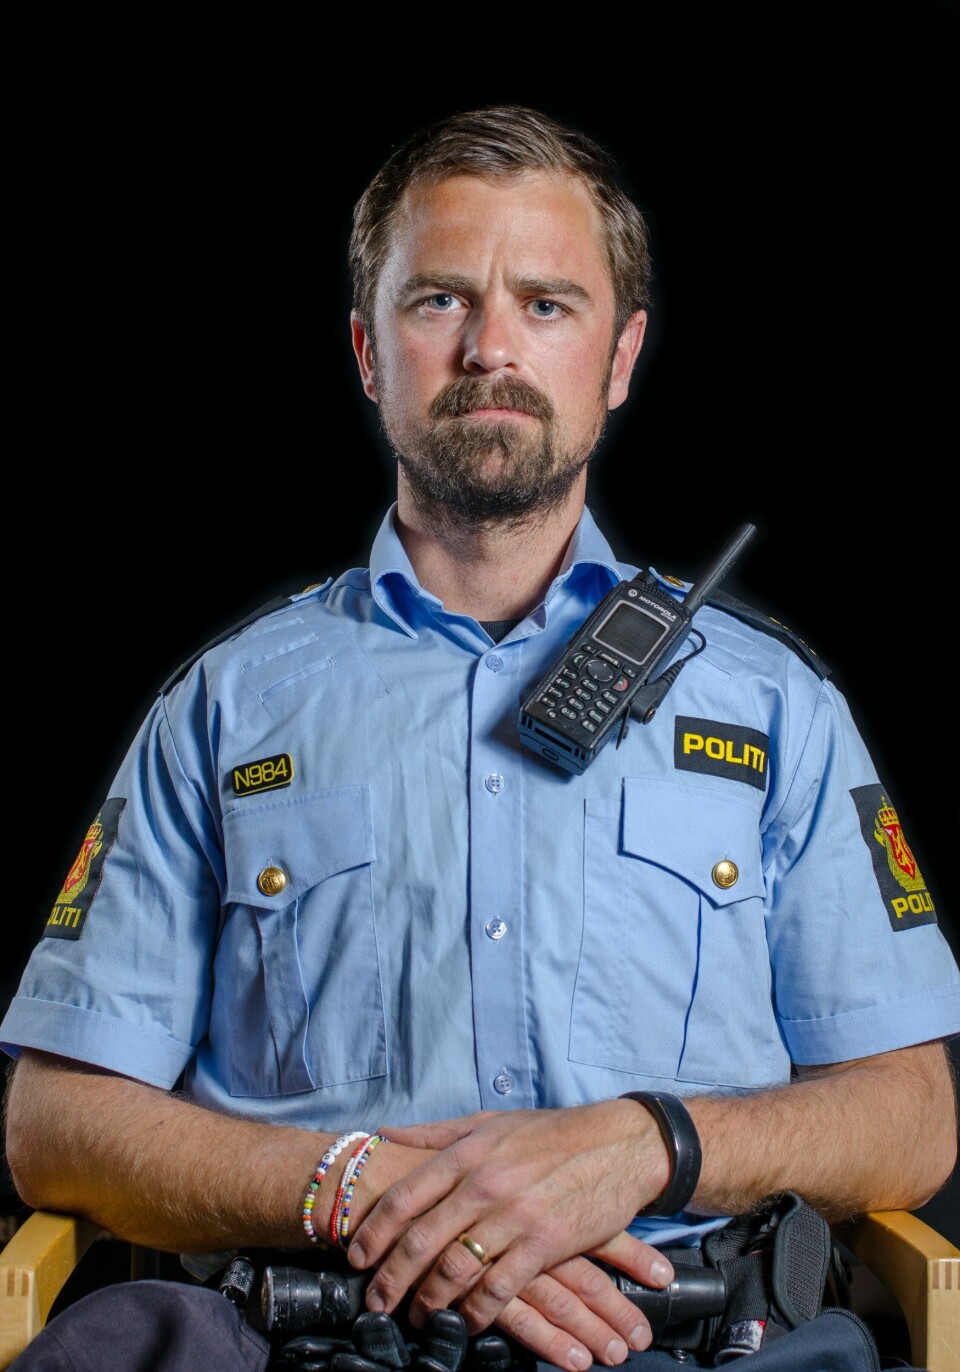 KARANTENE: Lasse Laudal, som jobber ved patruljeseksjonen ved enhet sentrum i Oslo, var i karantene etter en hendelse på jobb forrige fredag.